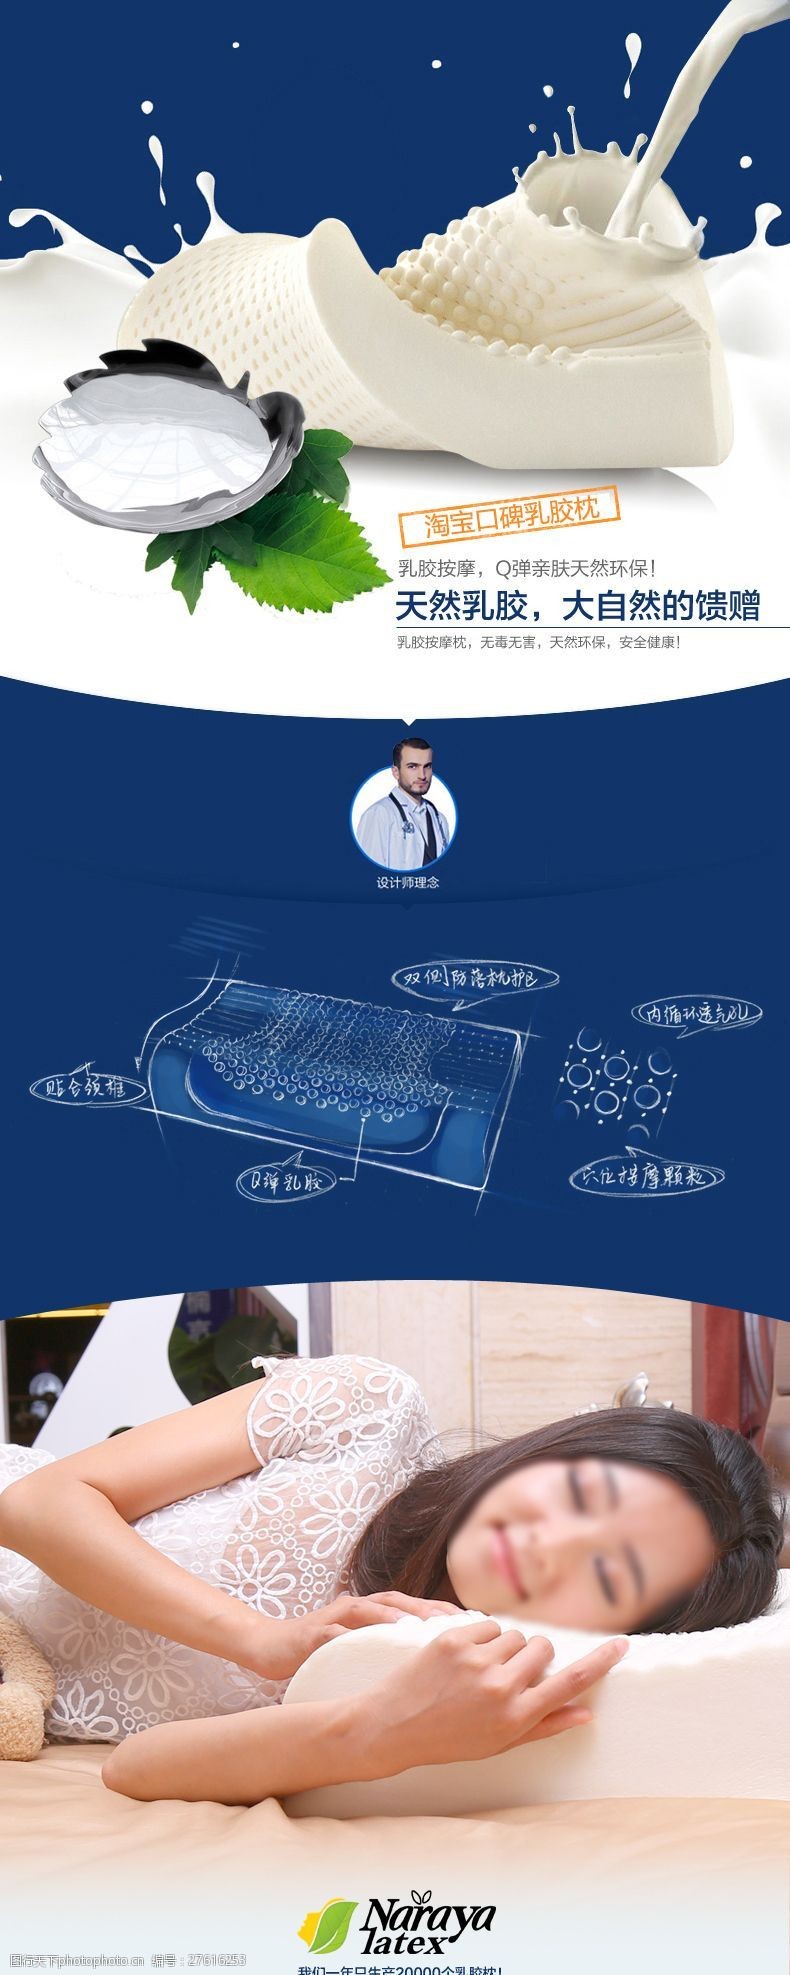 网页设计免费下载泰国天然乳胶枕头产品详情页设计